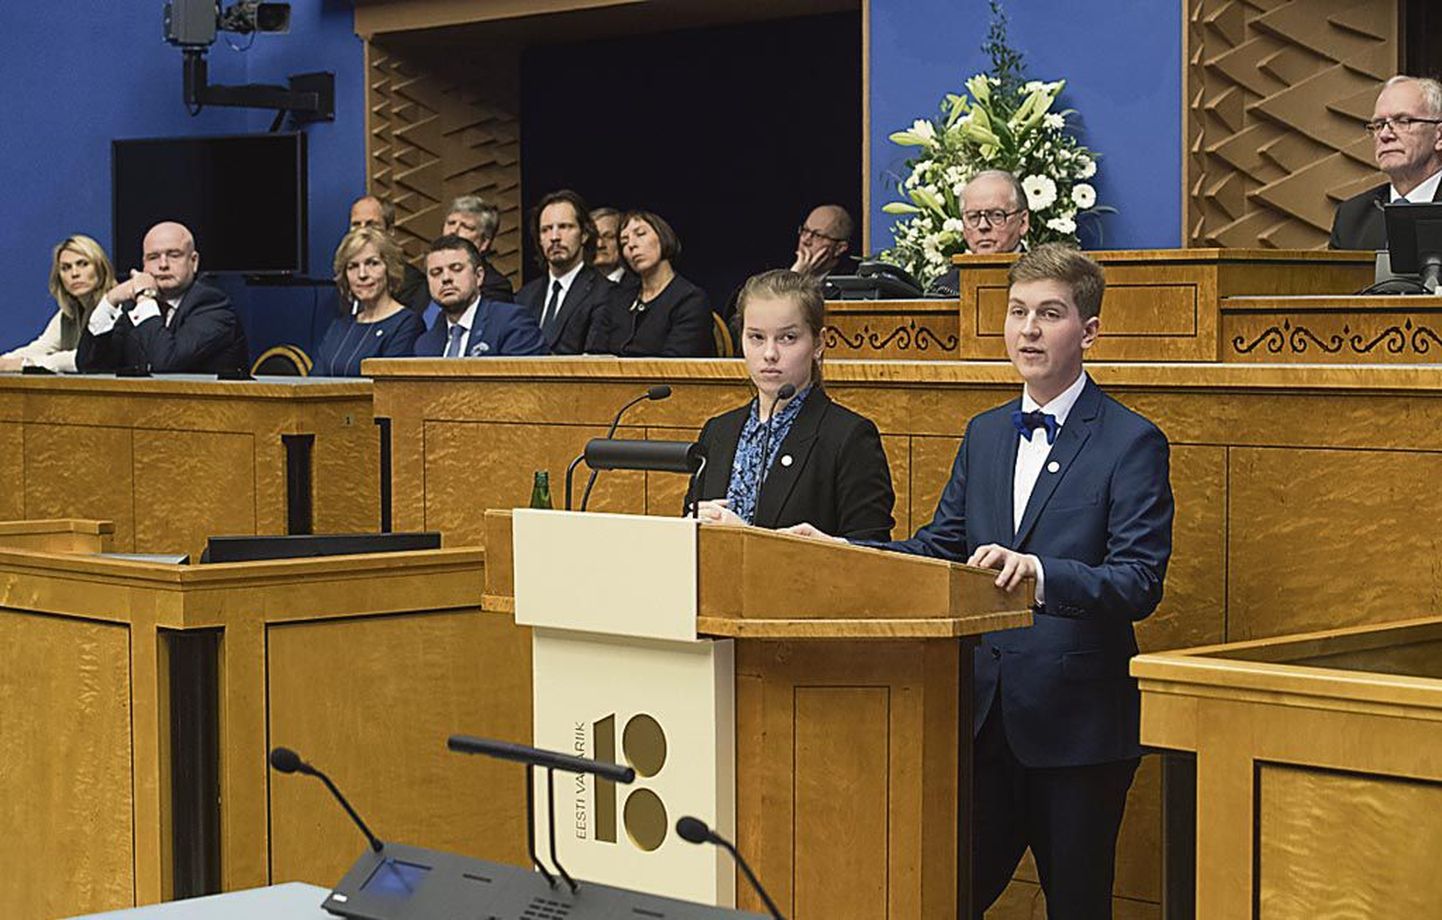 Selle nädala teisipäeval kandsid noored riigikogu saalis esimest korda ette Eestimaa noorte manifesti.